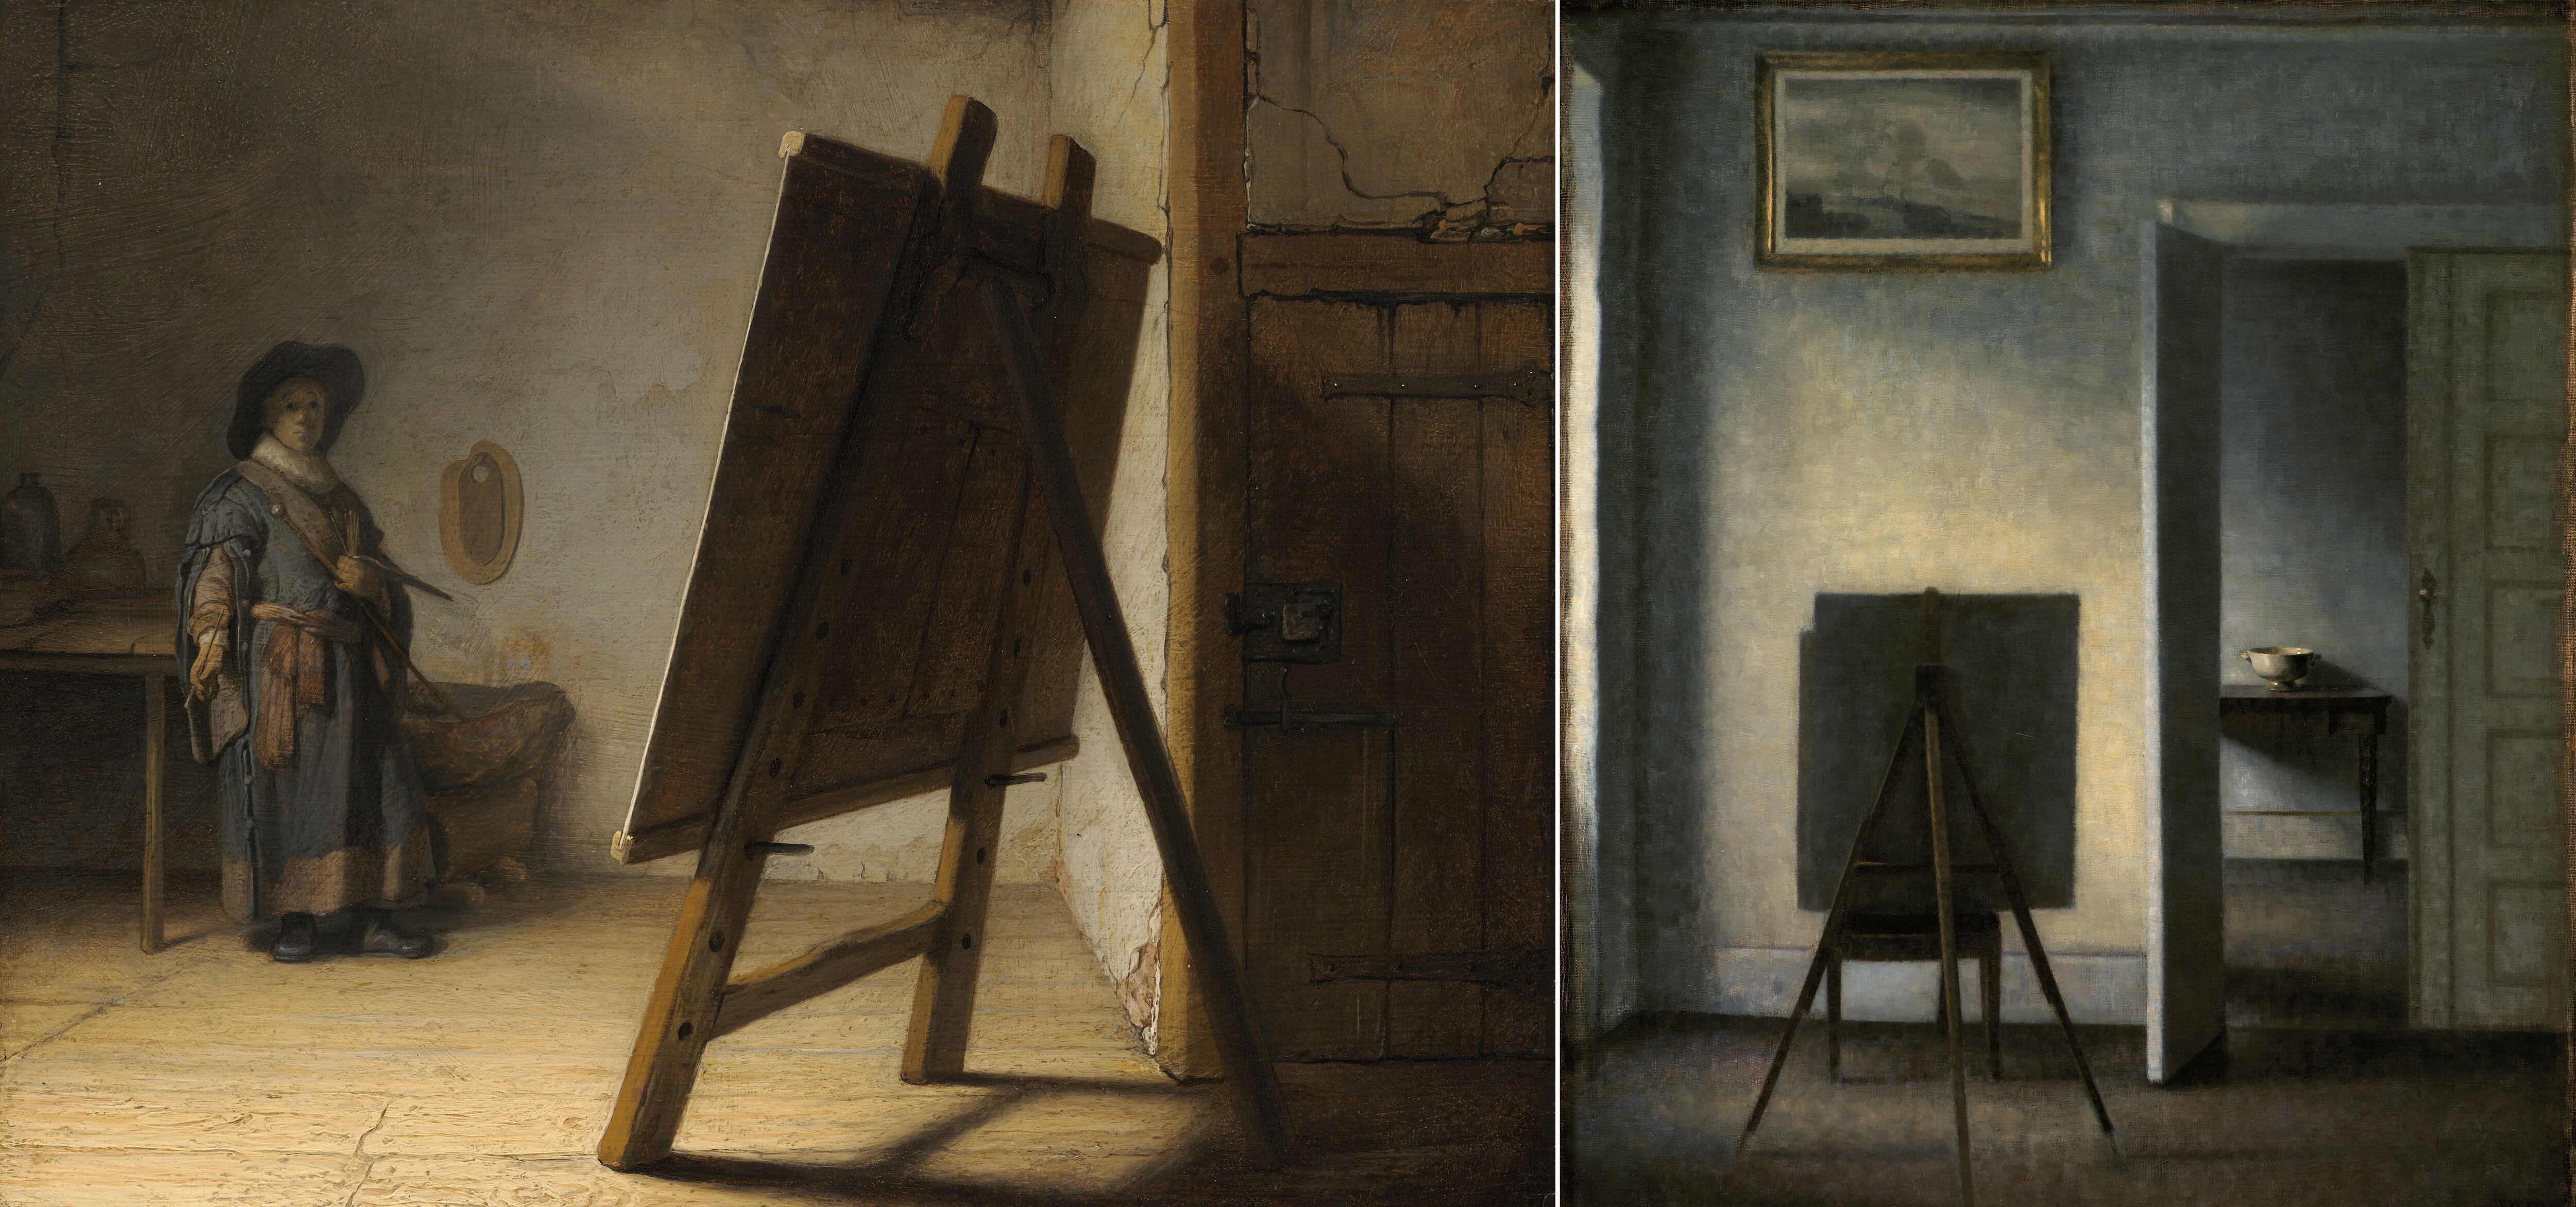 A la izquierda, 'Artista en su estudio' de Rembrandt. A la derecha, interior con el caballete del pintor Vilhelm Hammershøi, de 1910.